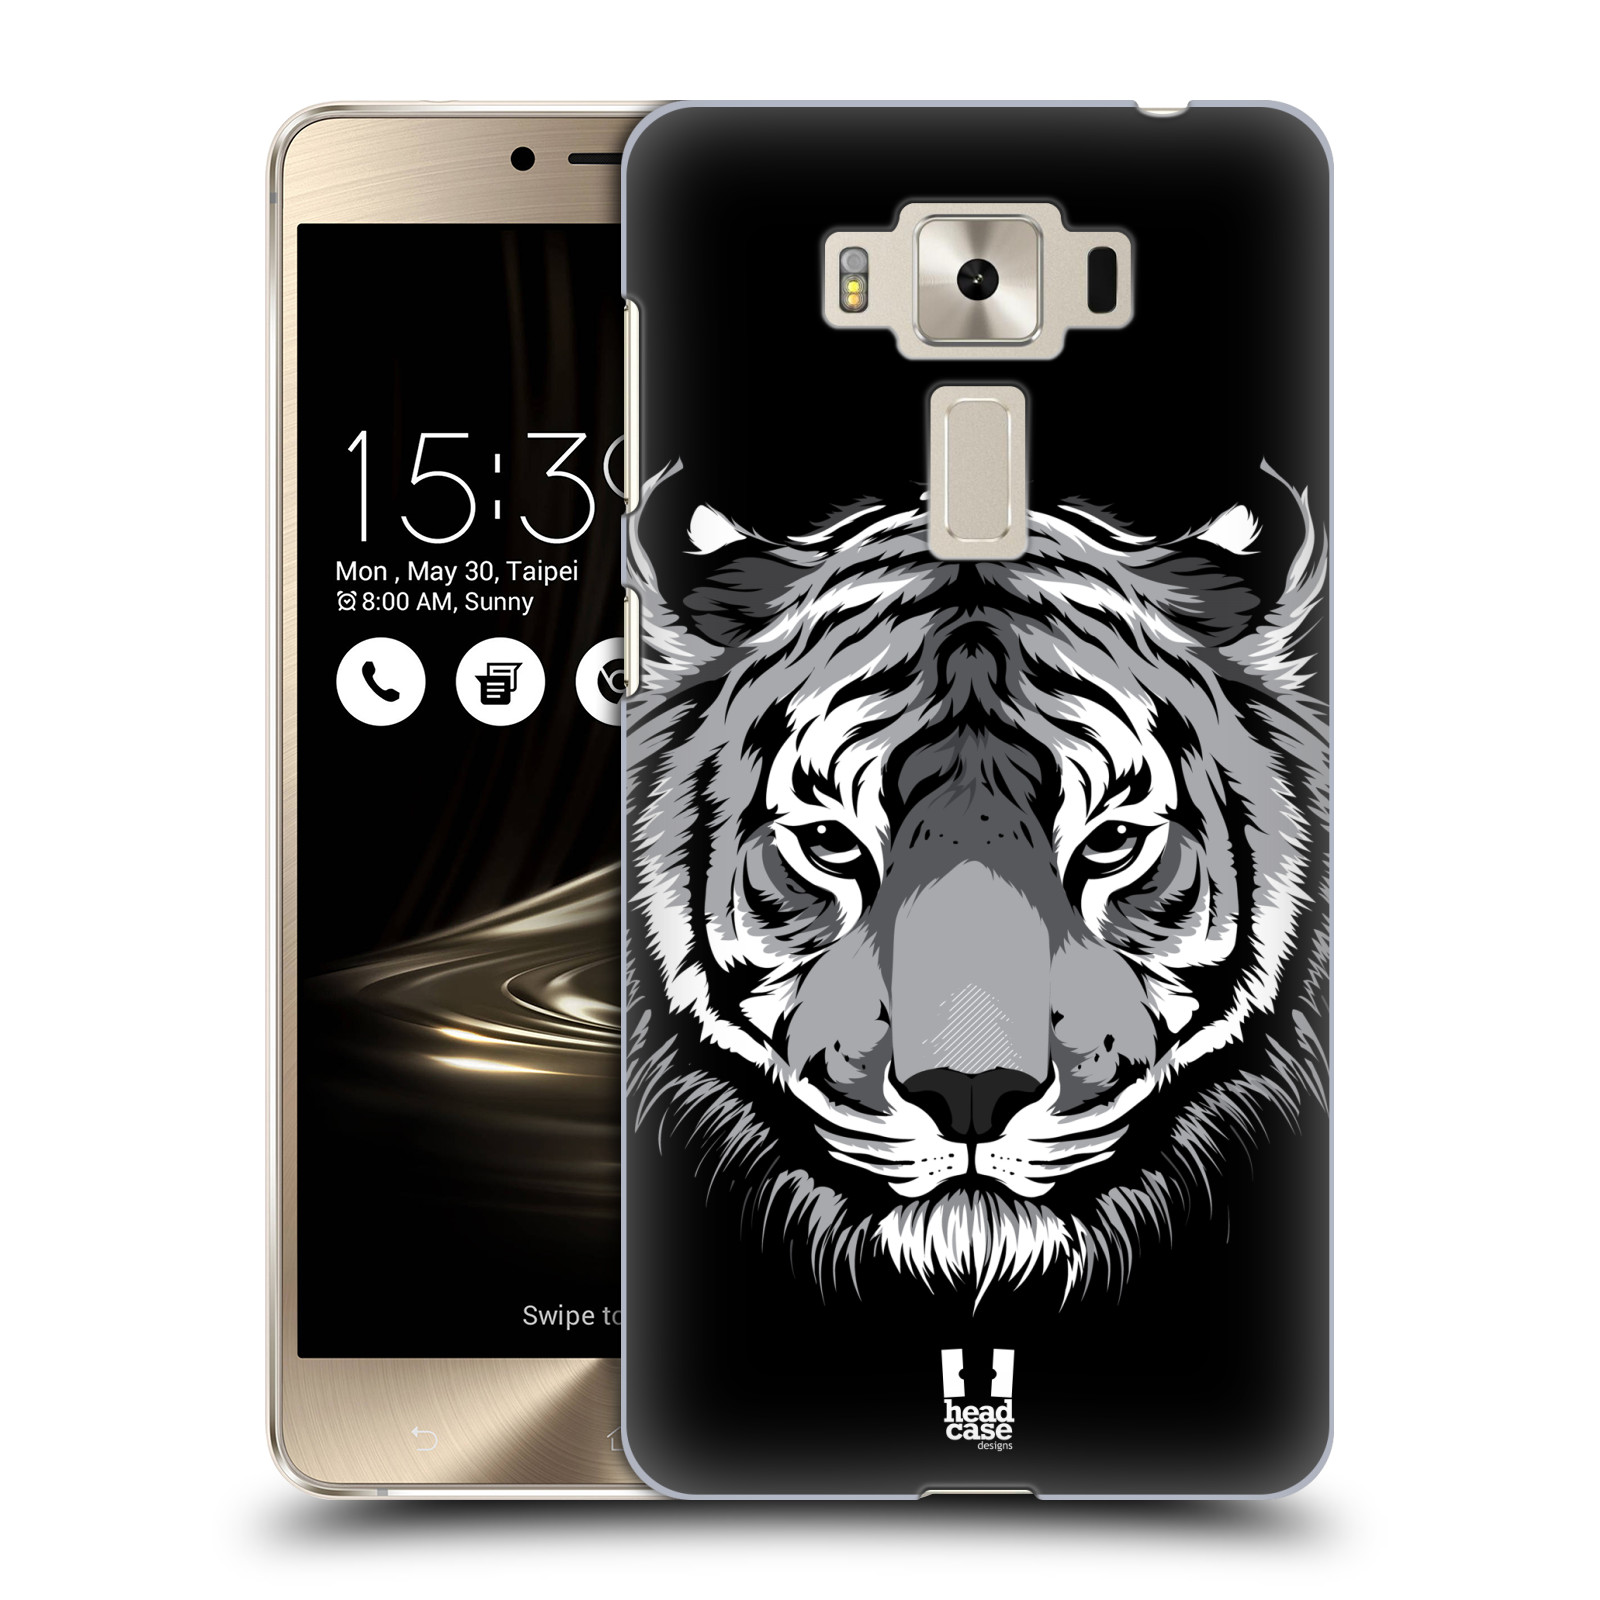 HEAD CASE plastový obal na mobil Asus Zenfone 3 DELUXE ZS550KL vzor Zvíře kreslená tvář 2 tygr